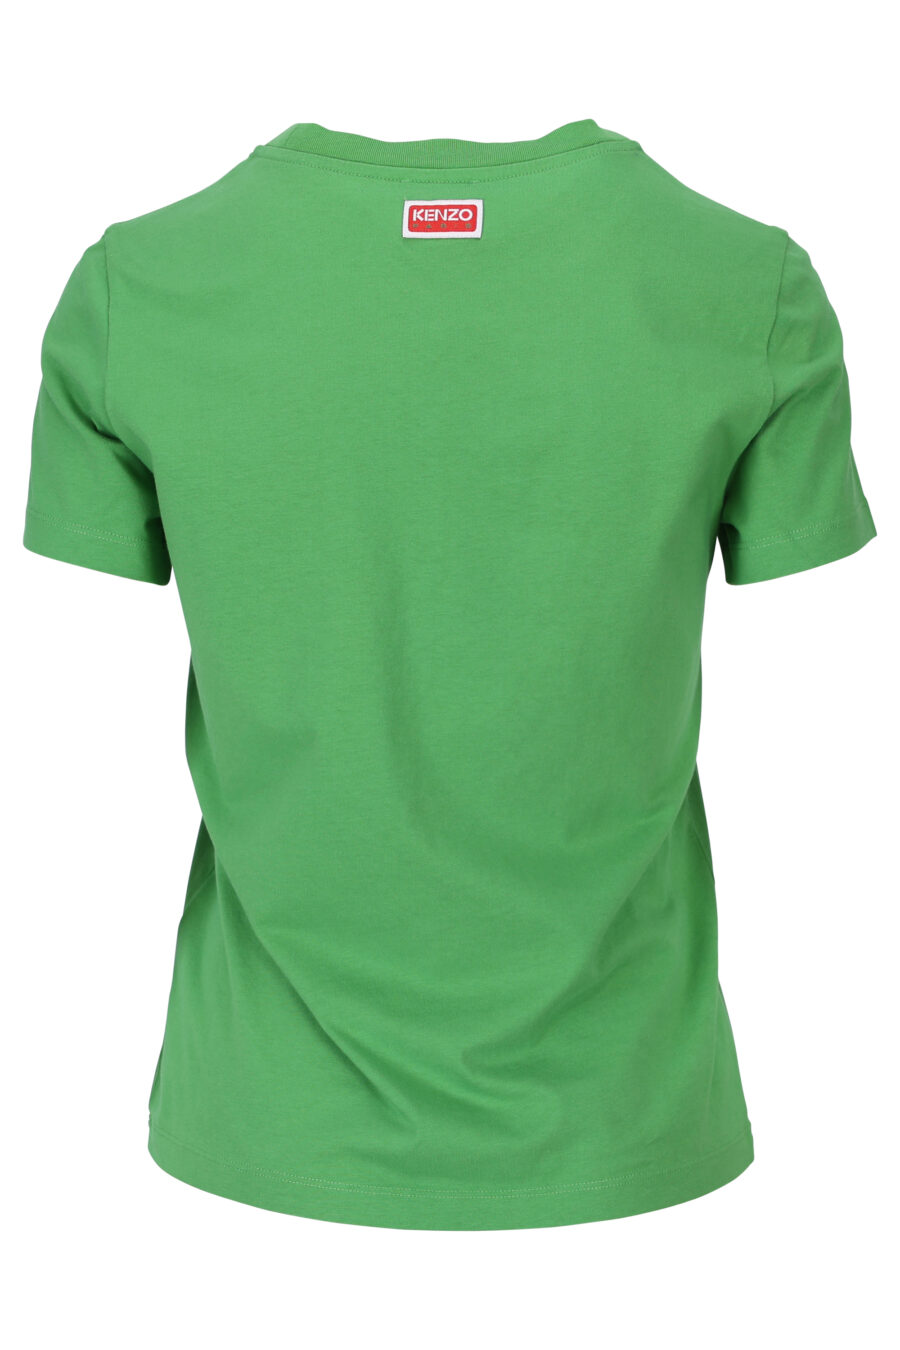 T-shirt verde com o logótipo "tigre" bordado - 3612230552524 1